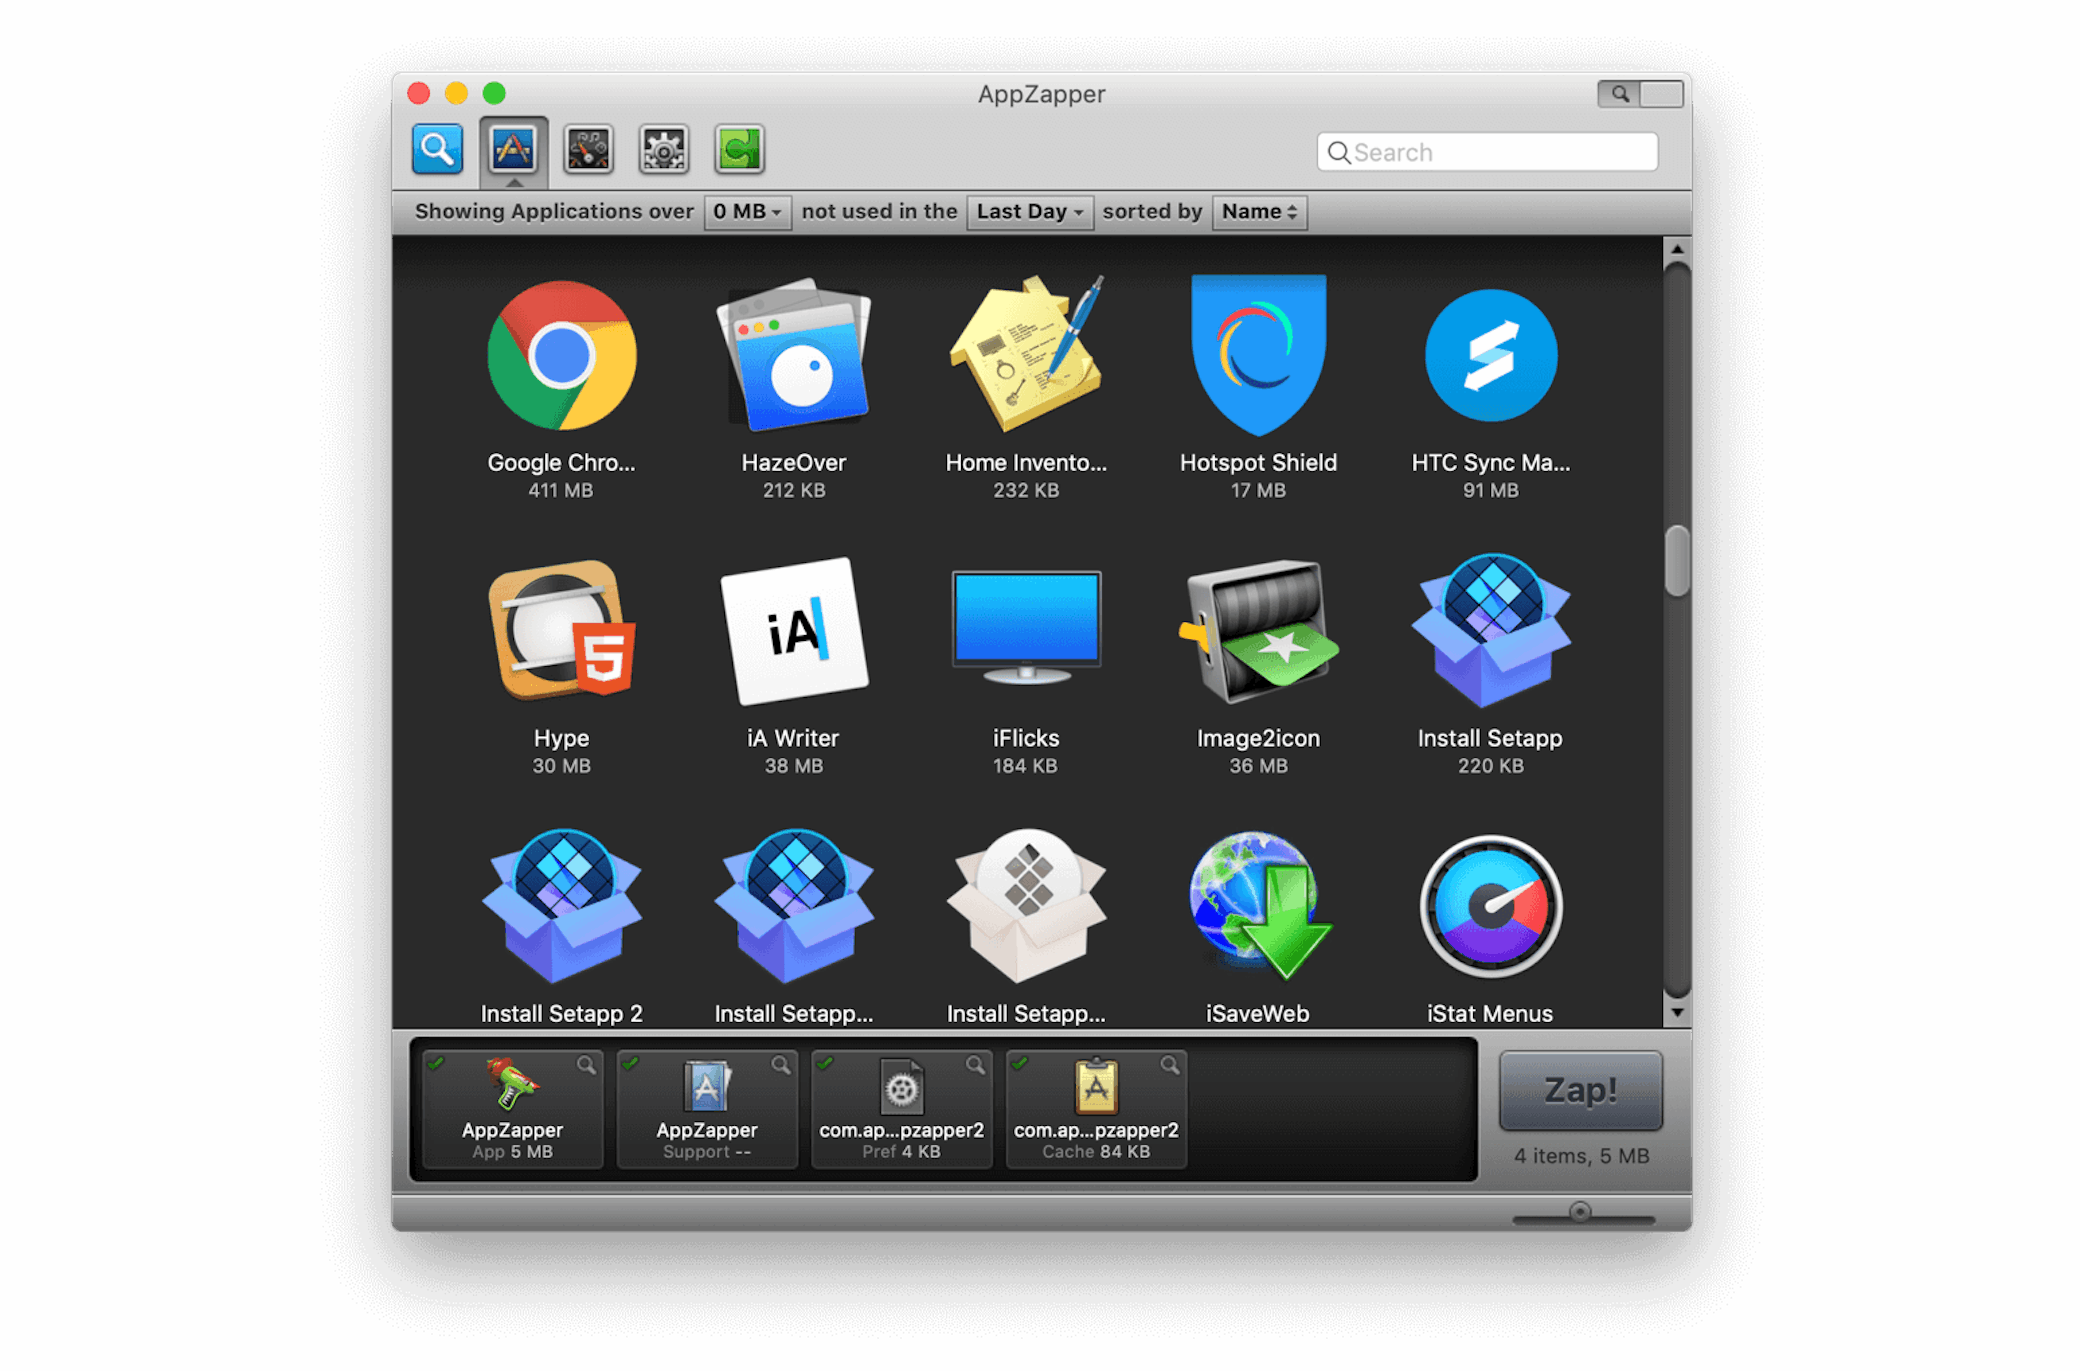 Appzapper Mac App Store